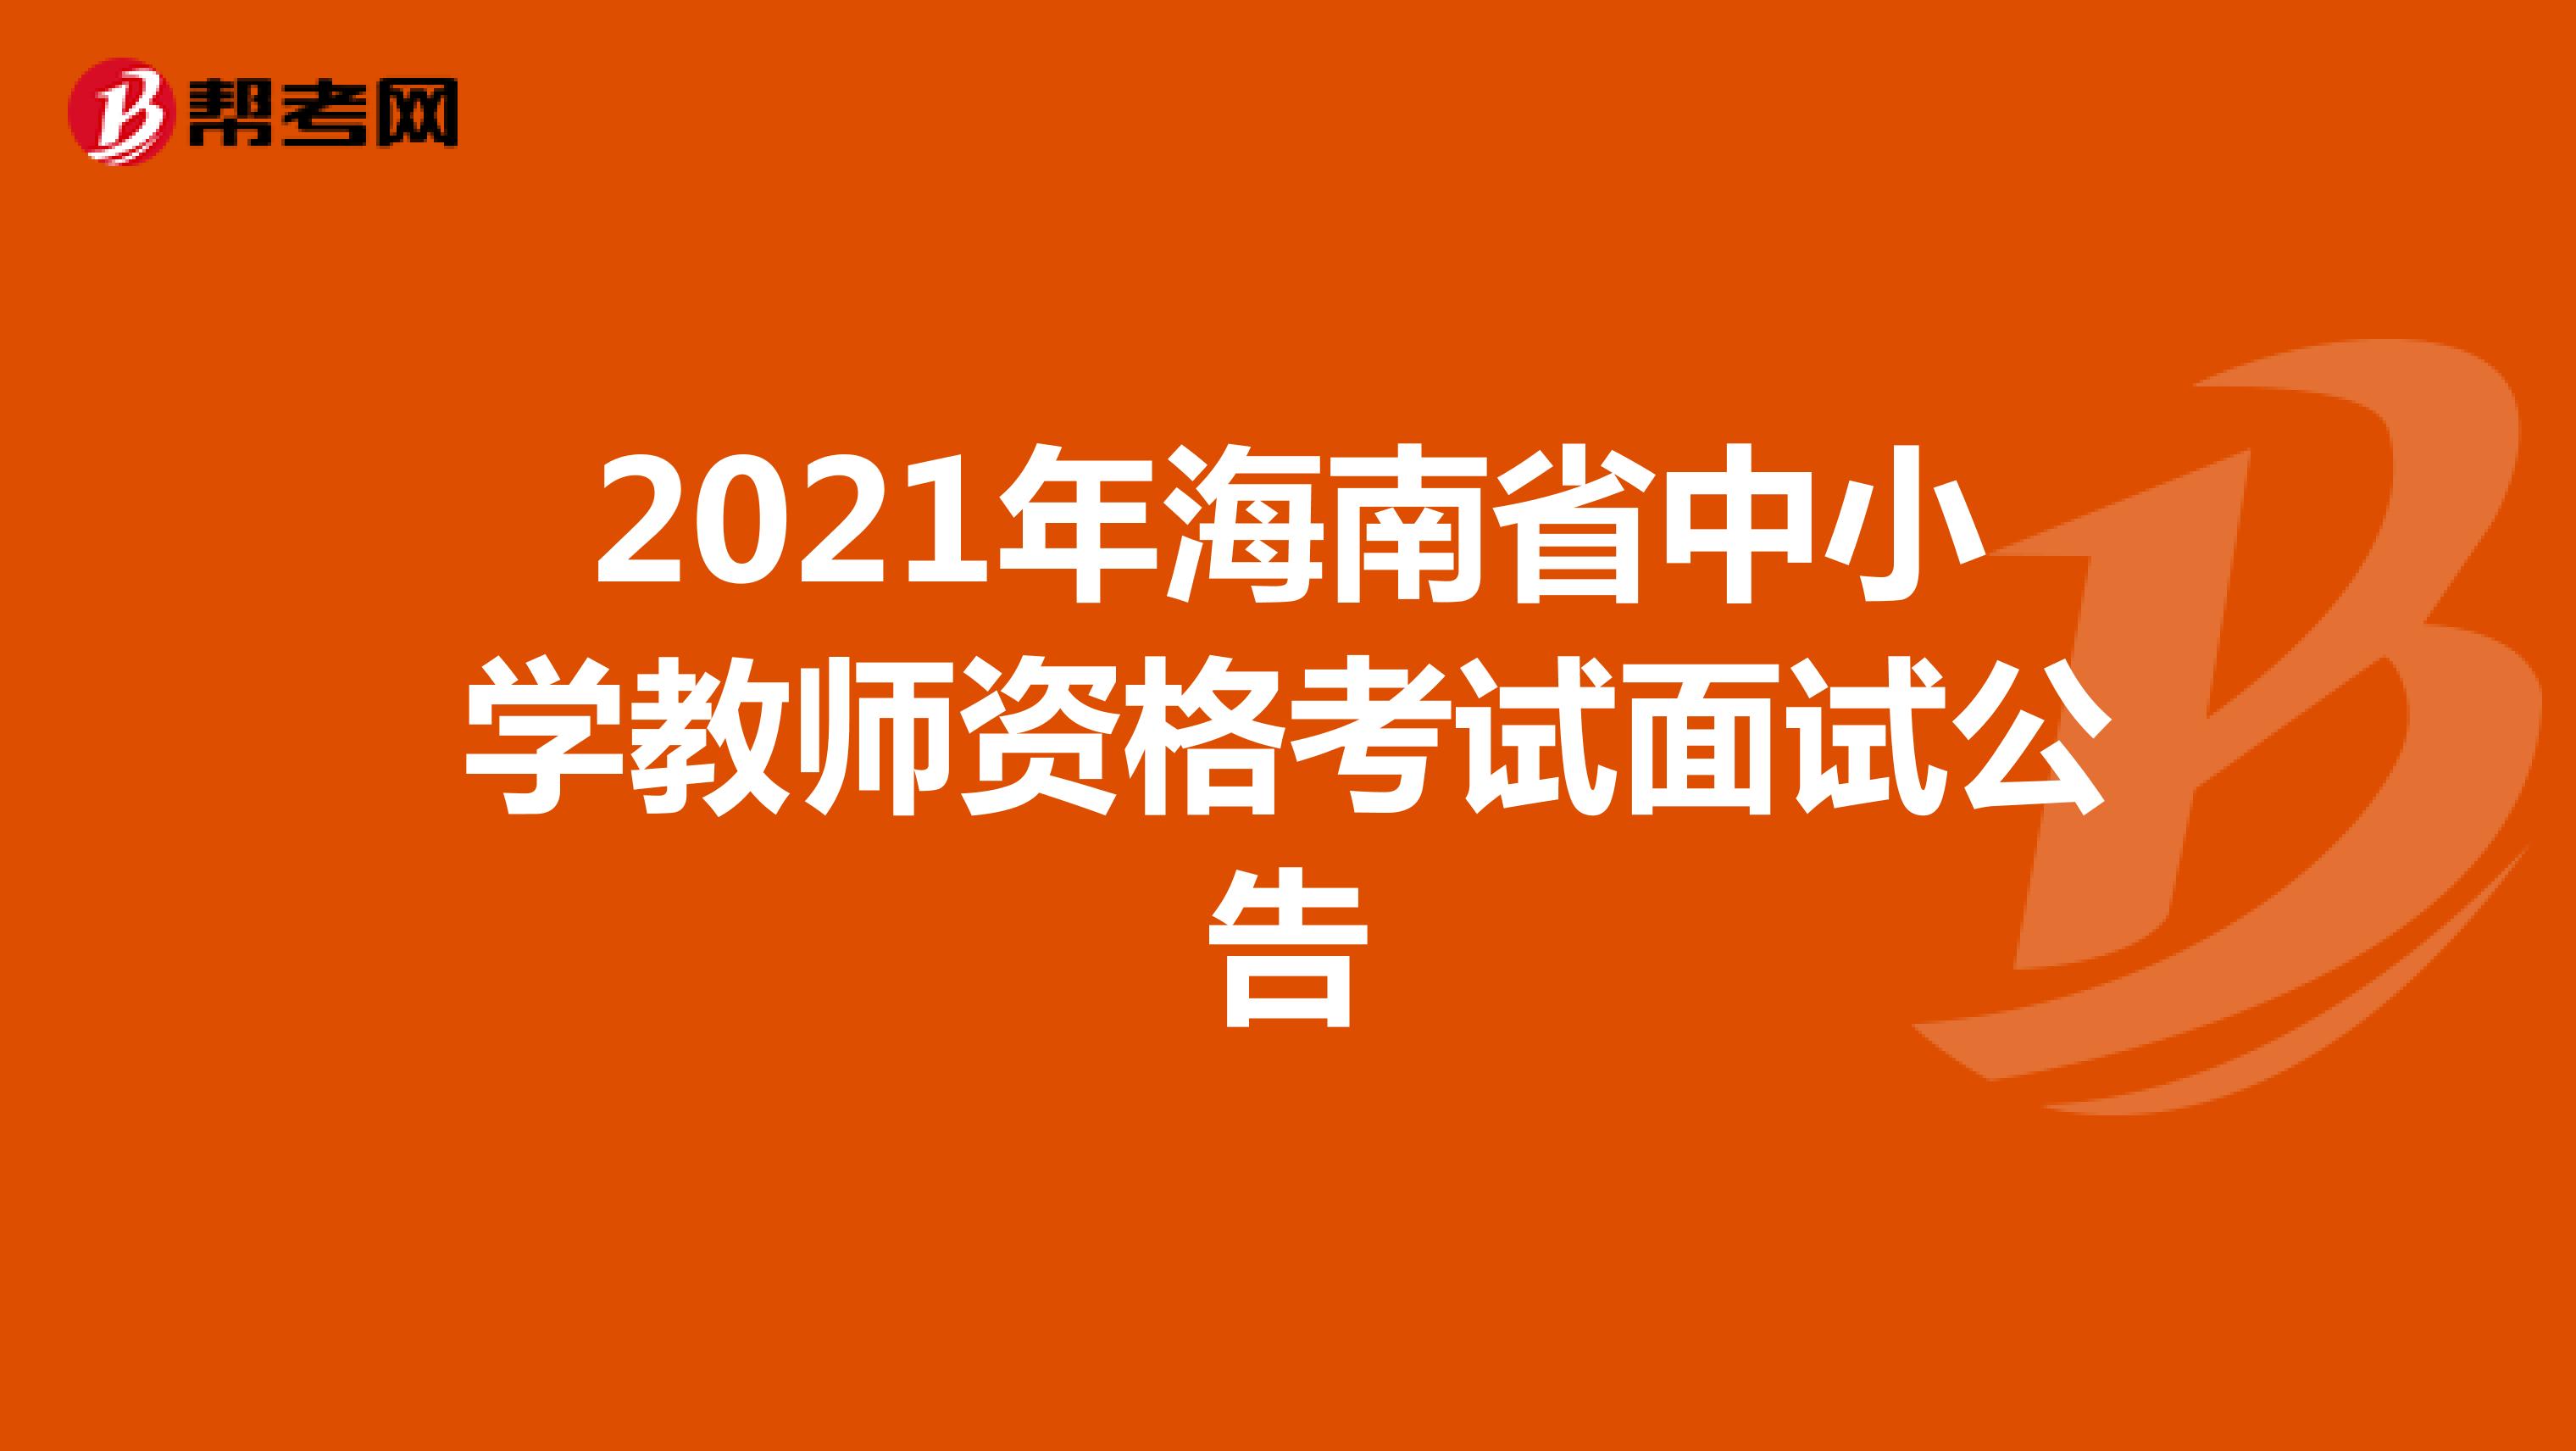 2021年海南省中小学教师资格考试面试公告